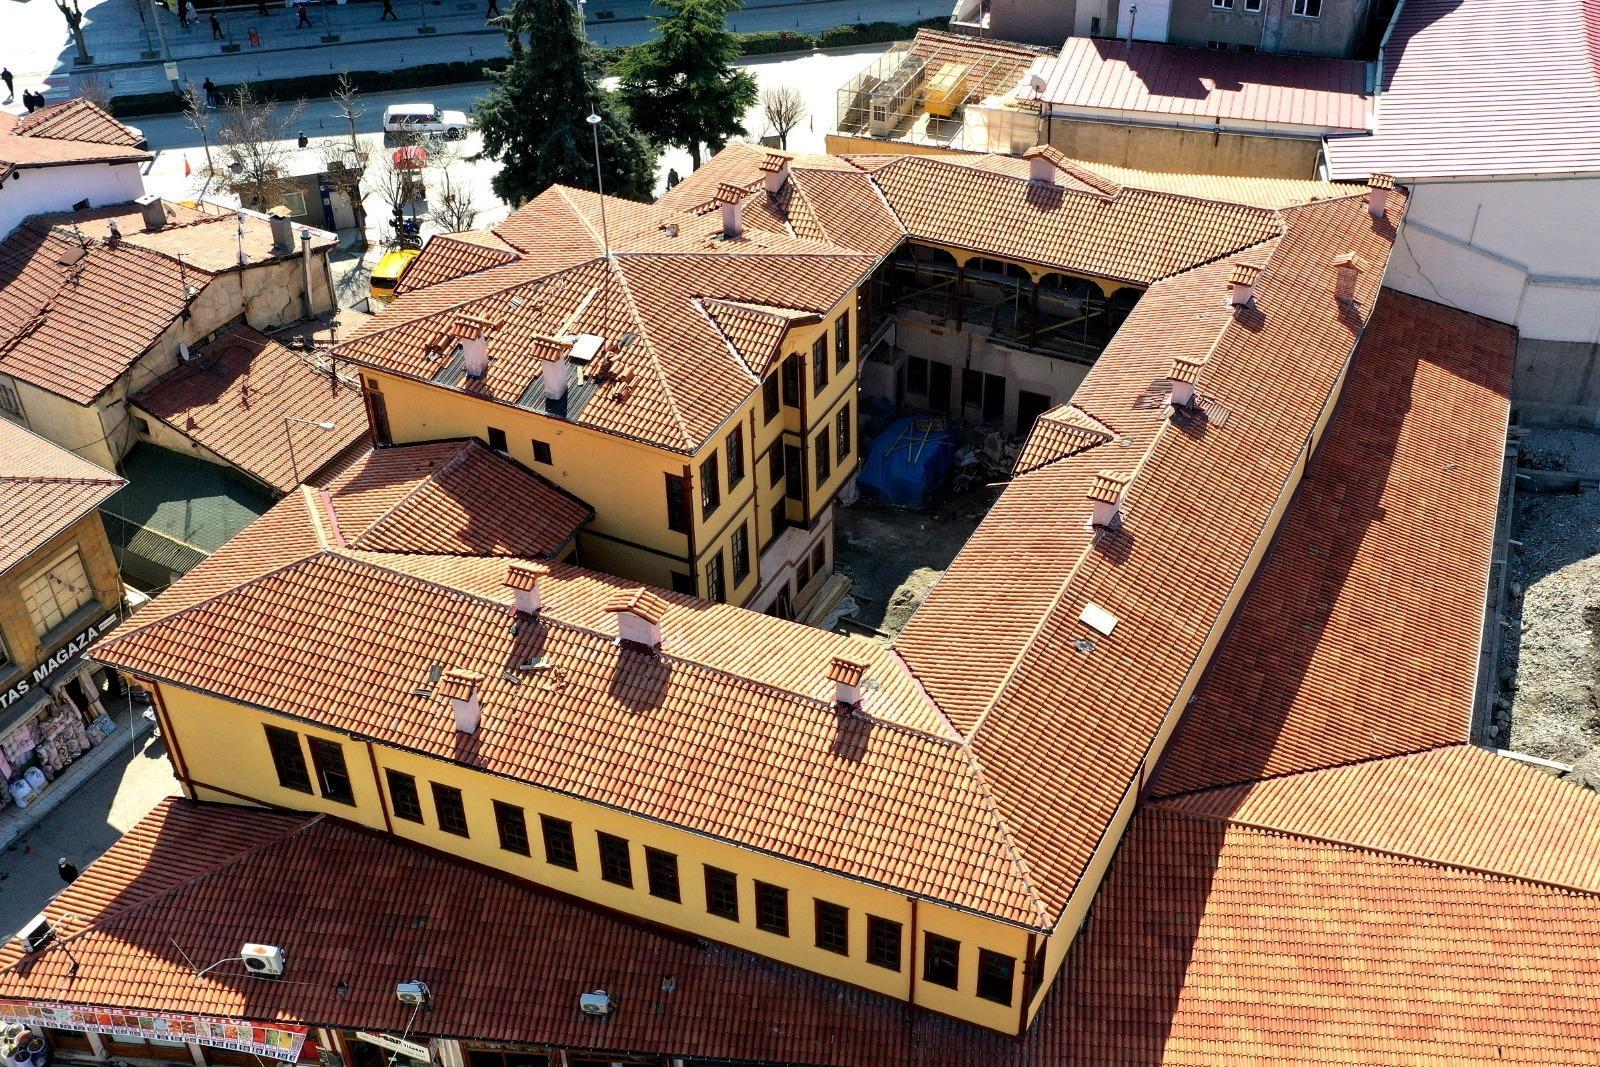 Market deposu olarak kullanılan tarihi Veli Paşa Hanı restore edildi